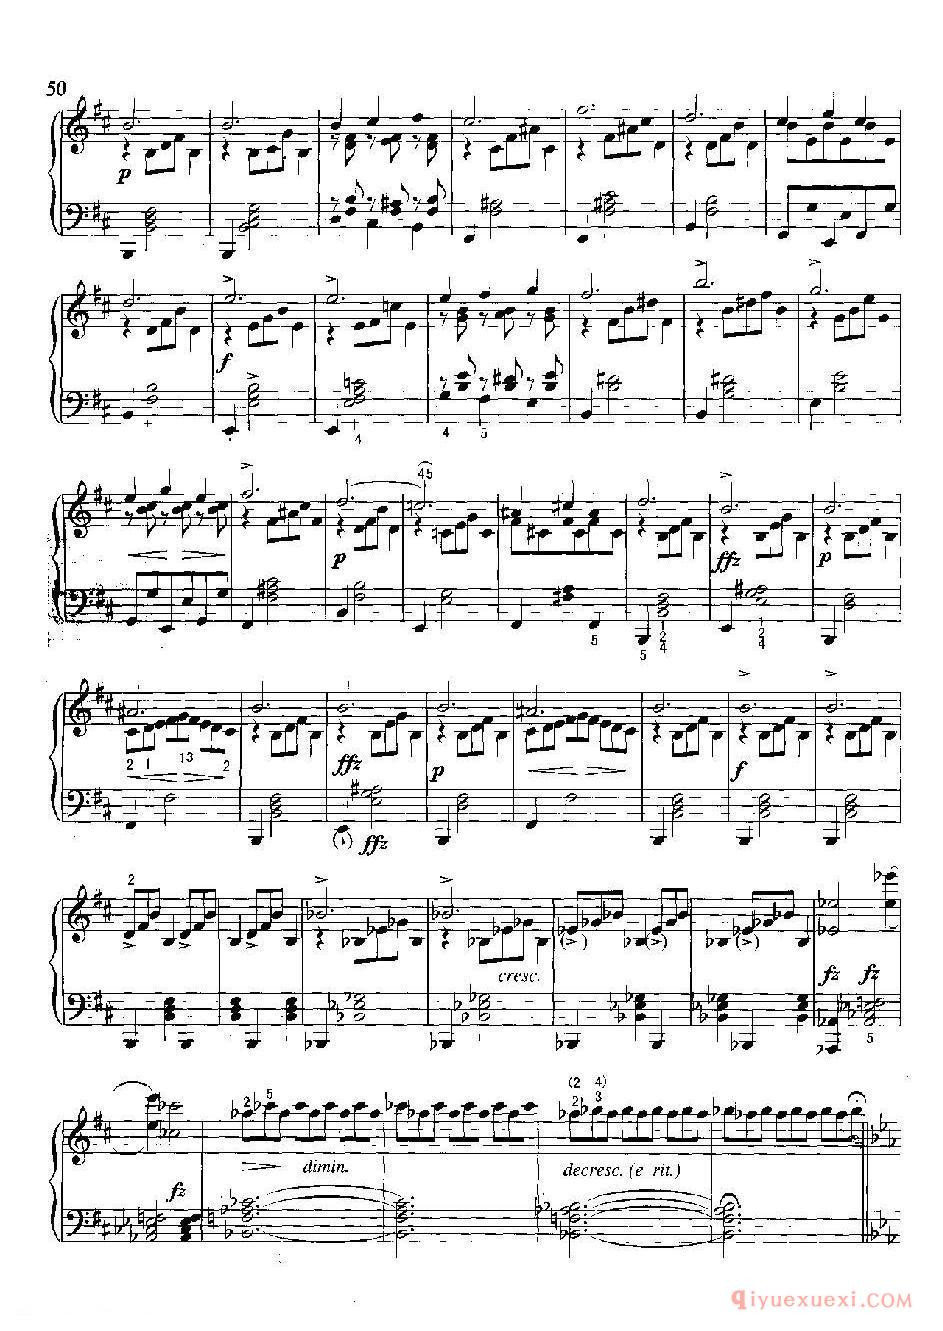 即兴曲（第2首）( lmpromptu II ，Op.90-2)舒柏特